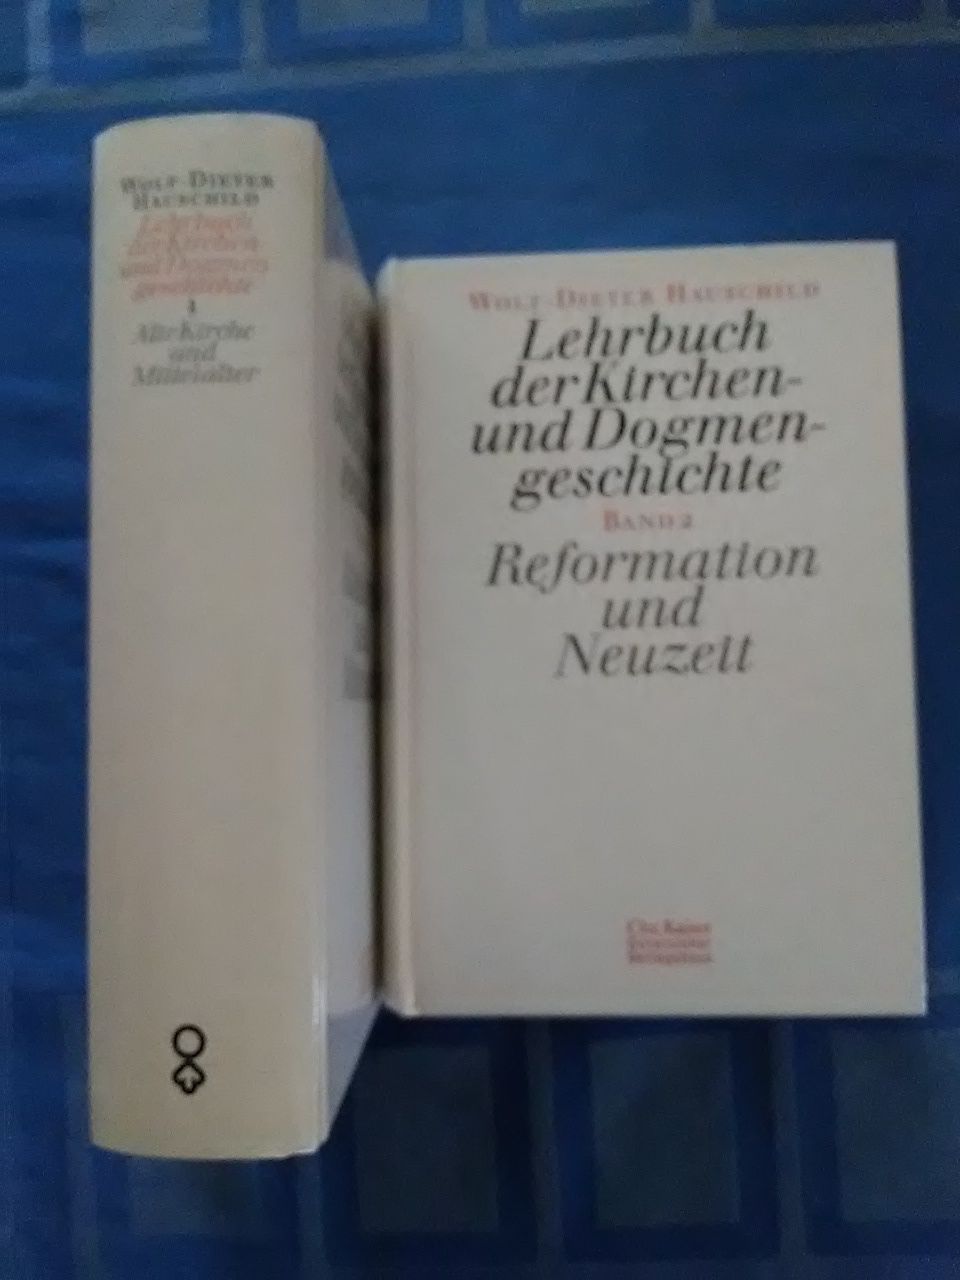 Lehrbuch der Kirchen- und Dogmengeschichte. Band 1 und 2 (2 Bände komplett). - HAUSCHILD, WOLF-DIETER